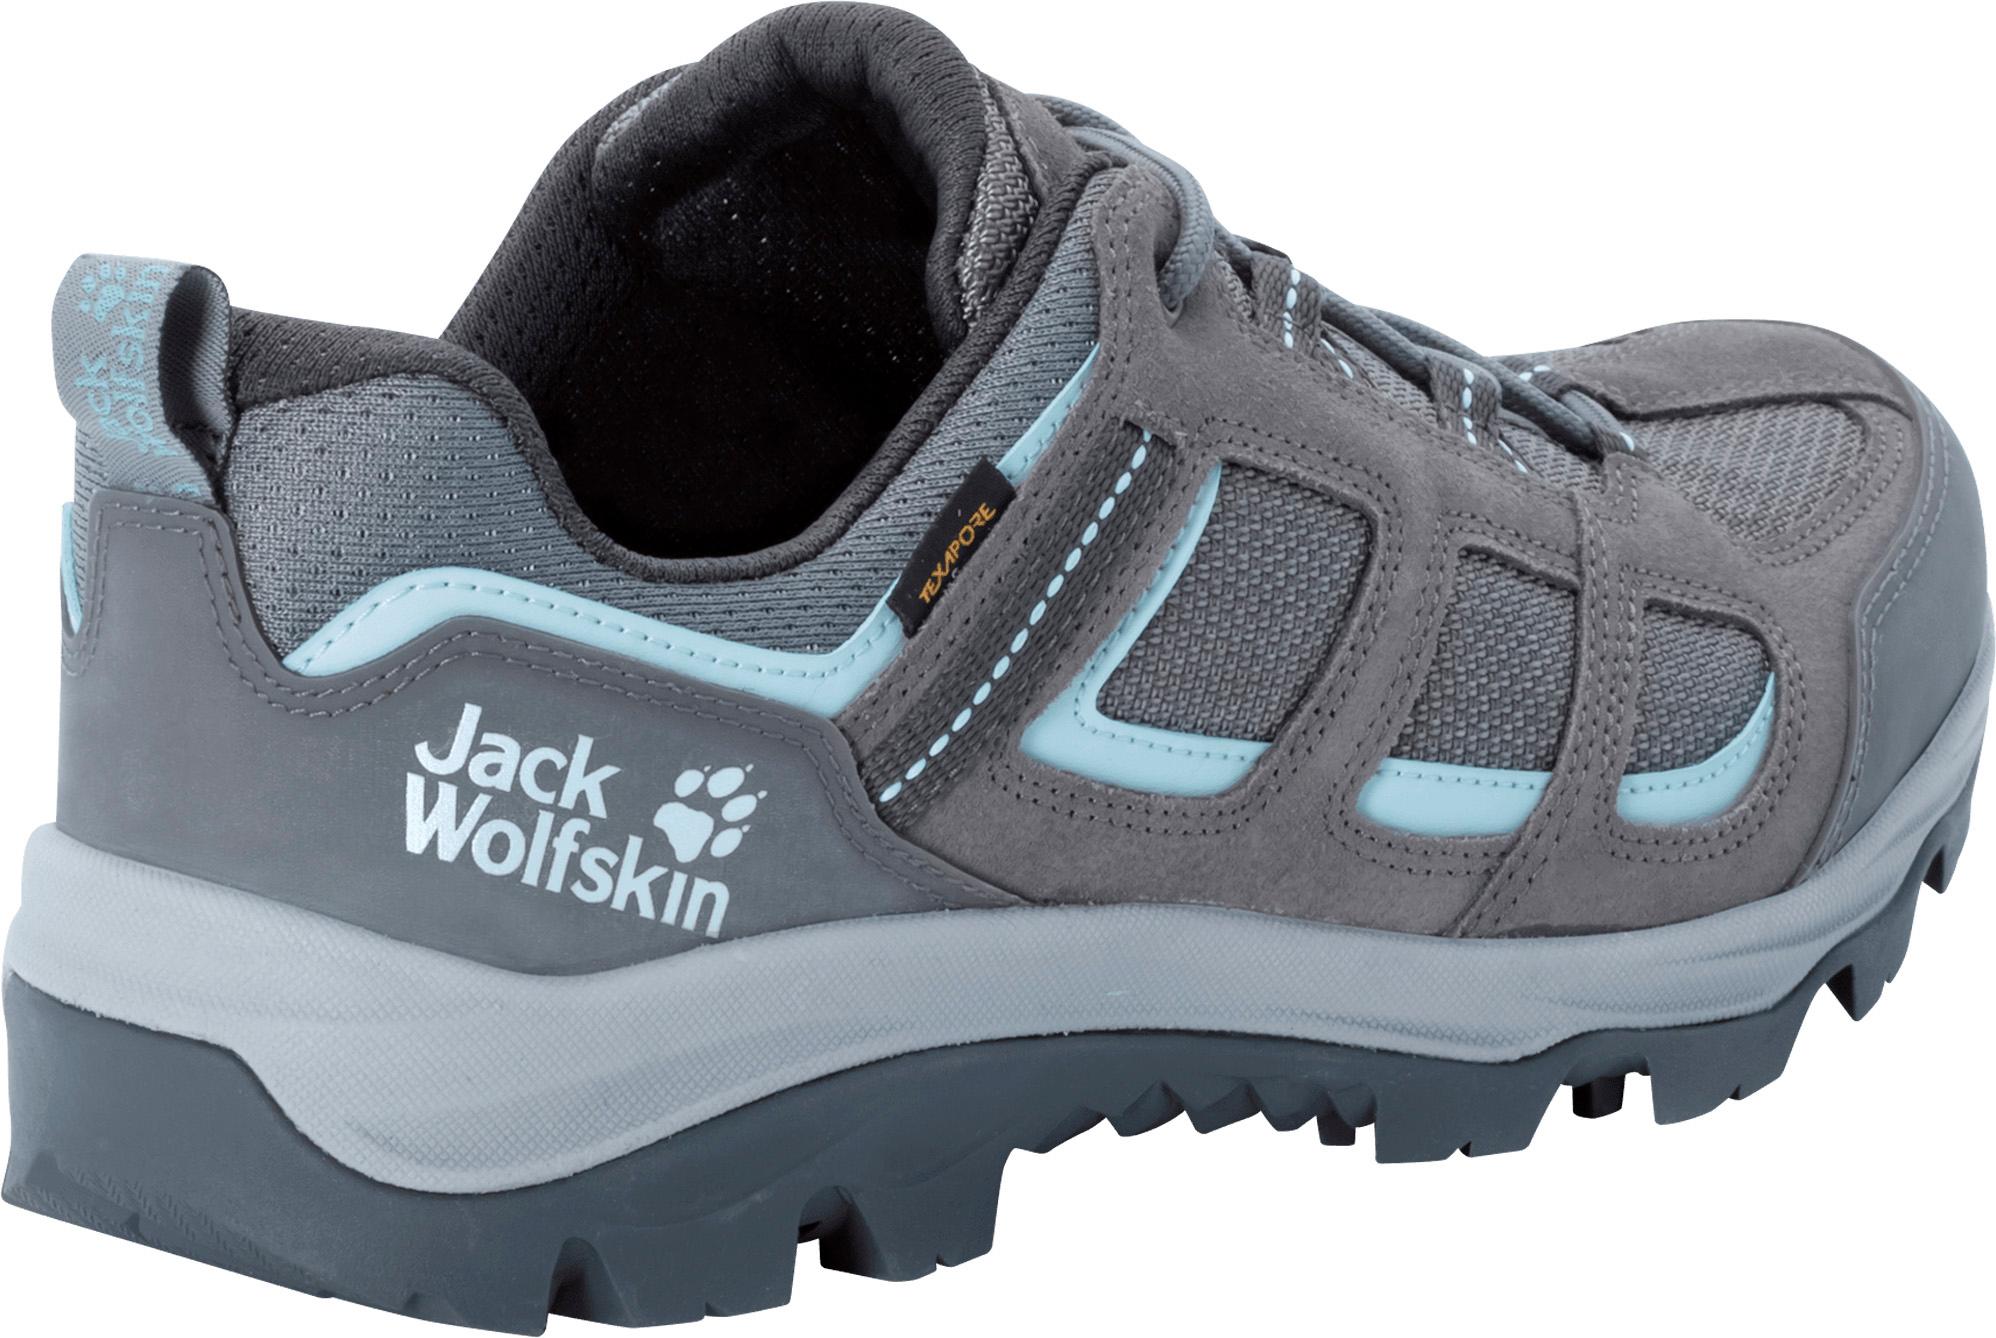 Jack Wolfskin Wanderschuhe grey-light von SportScheck im 3 Shop Online LOW TEXAPORE tarmac Damen blue VOJO kaufen